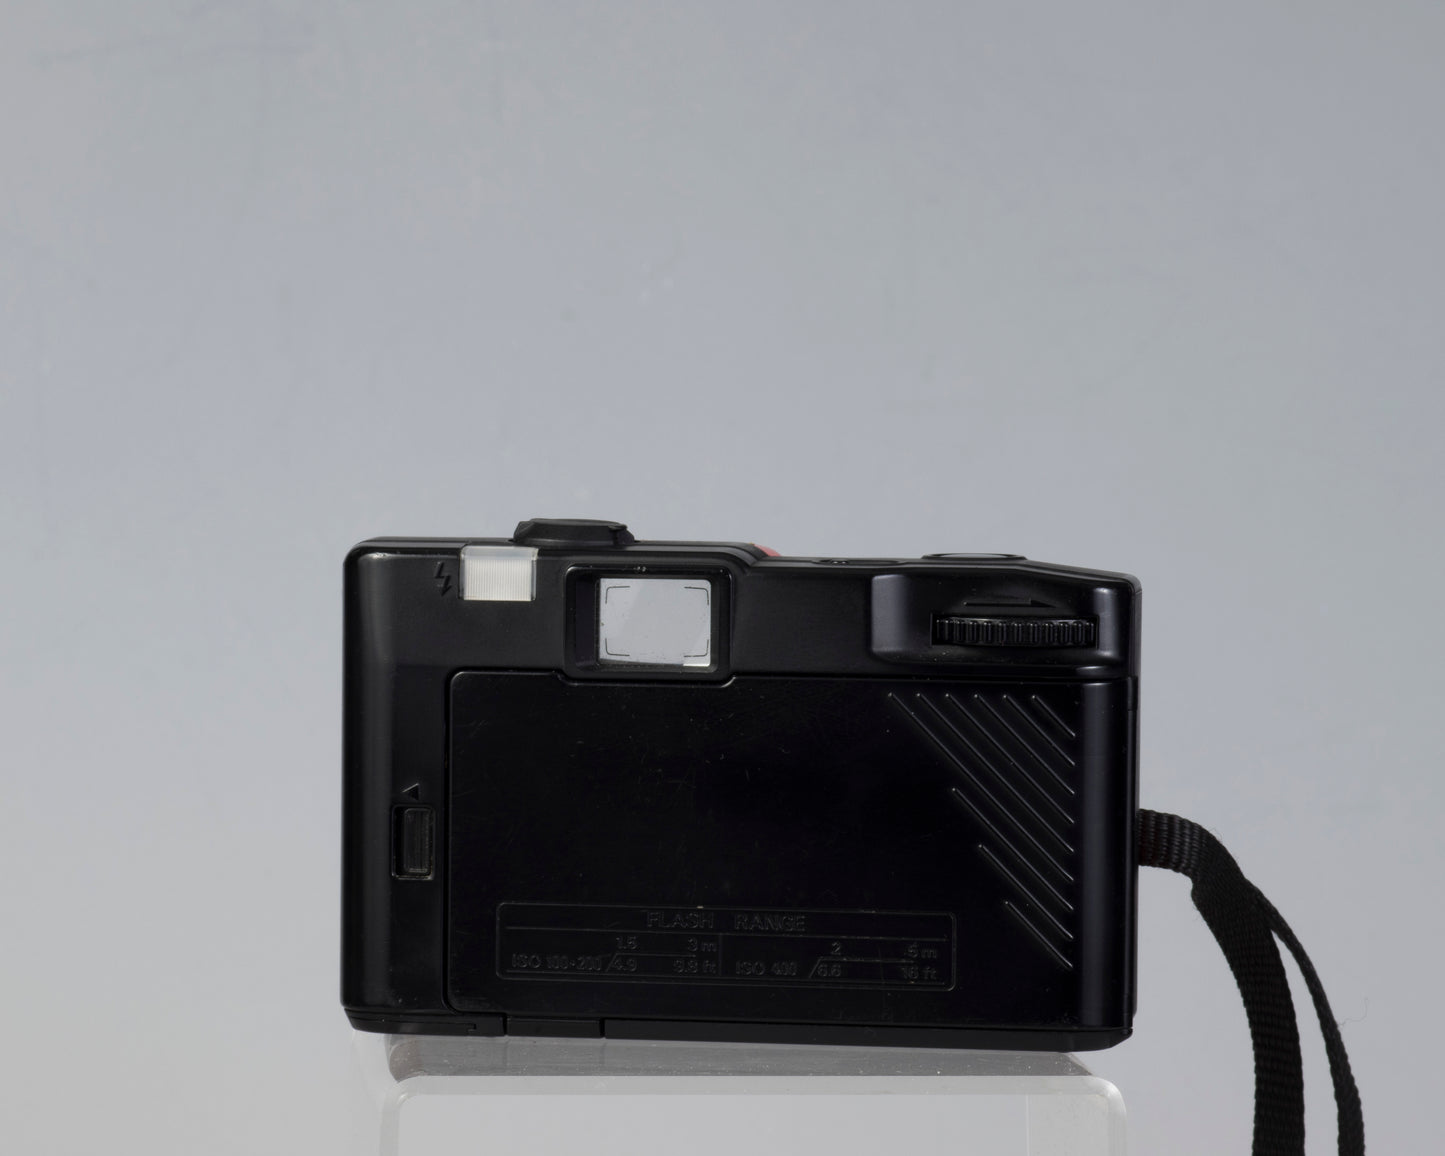 Appareil photo compact Konica EFP-3 35 mm (série 354020)